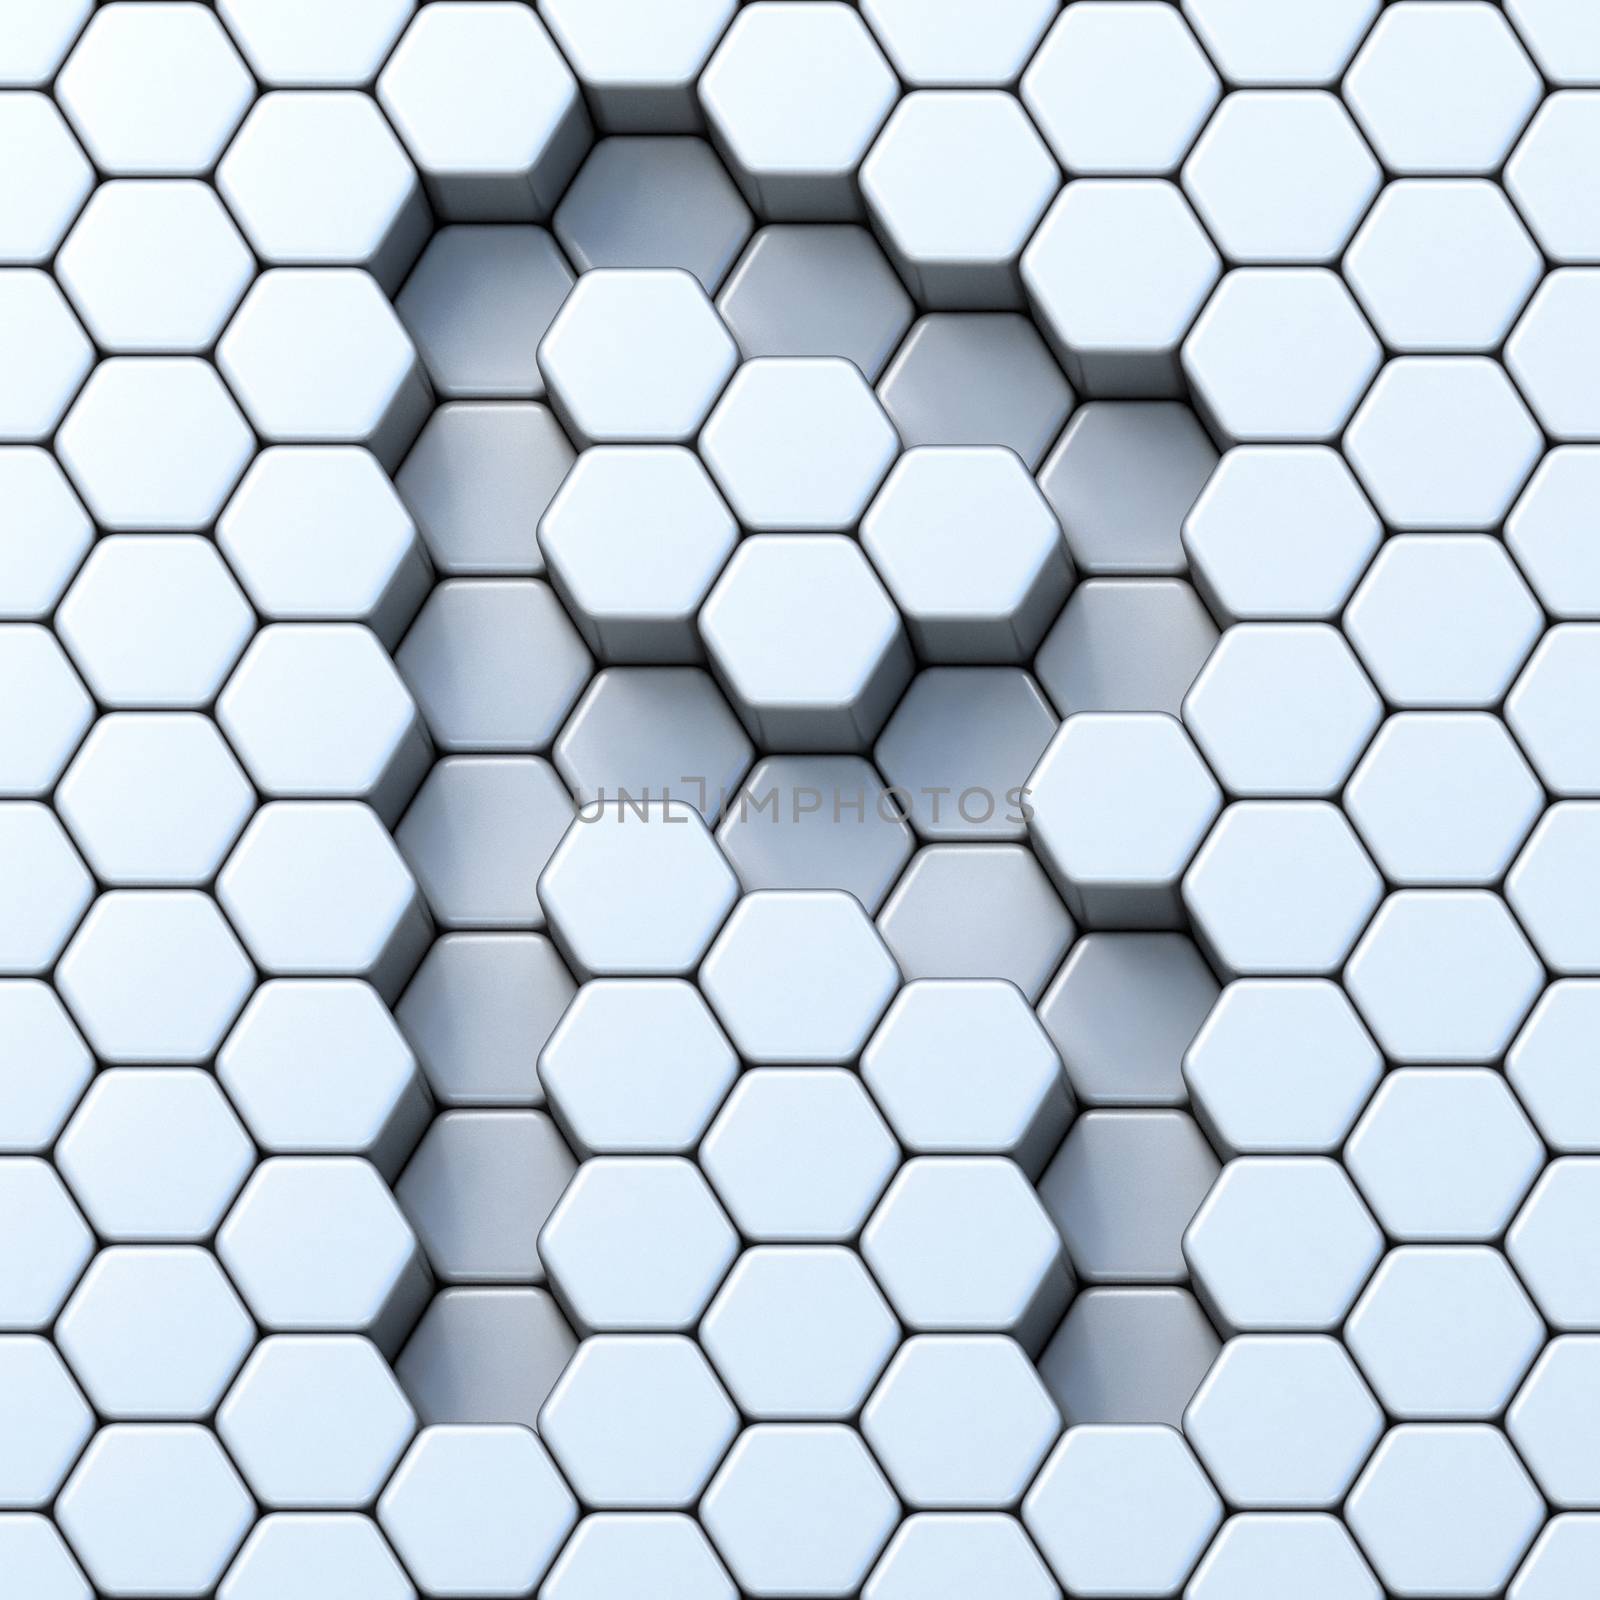 Hexagonal grid letter R 3D render illustration